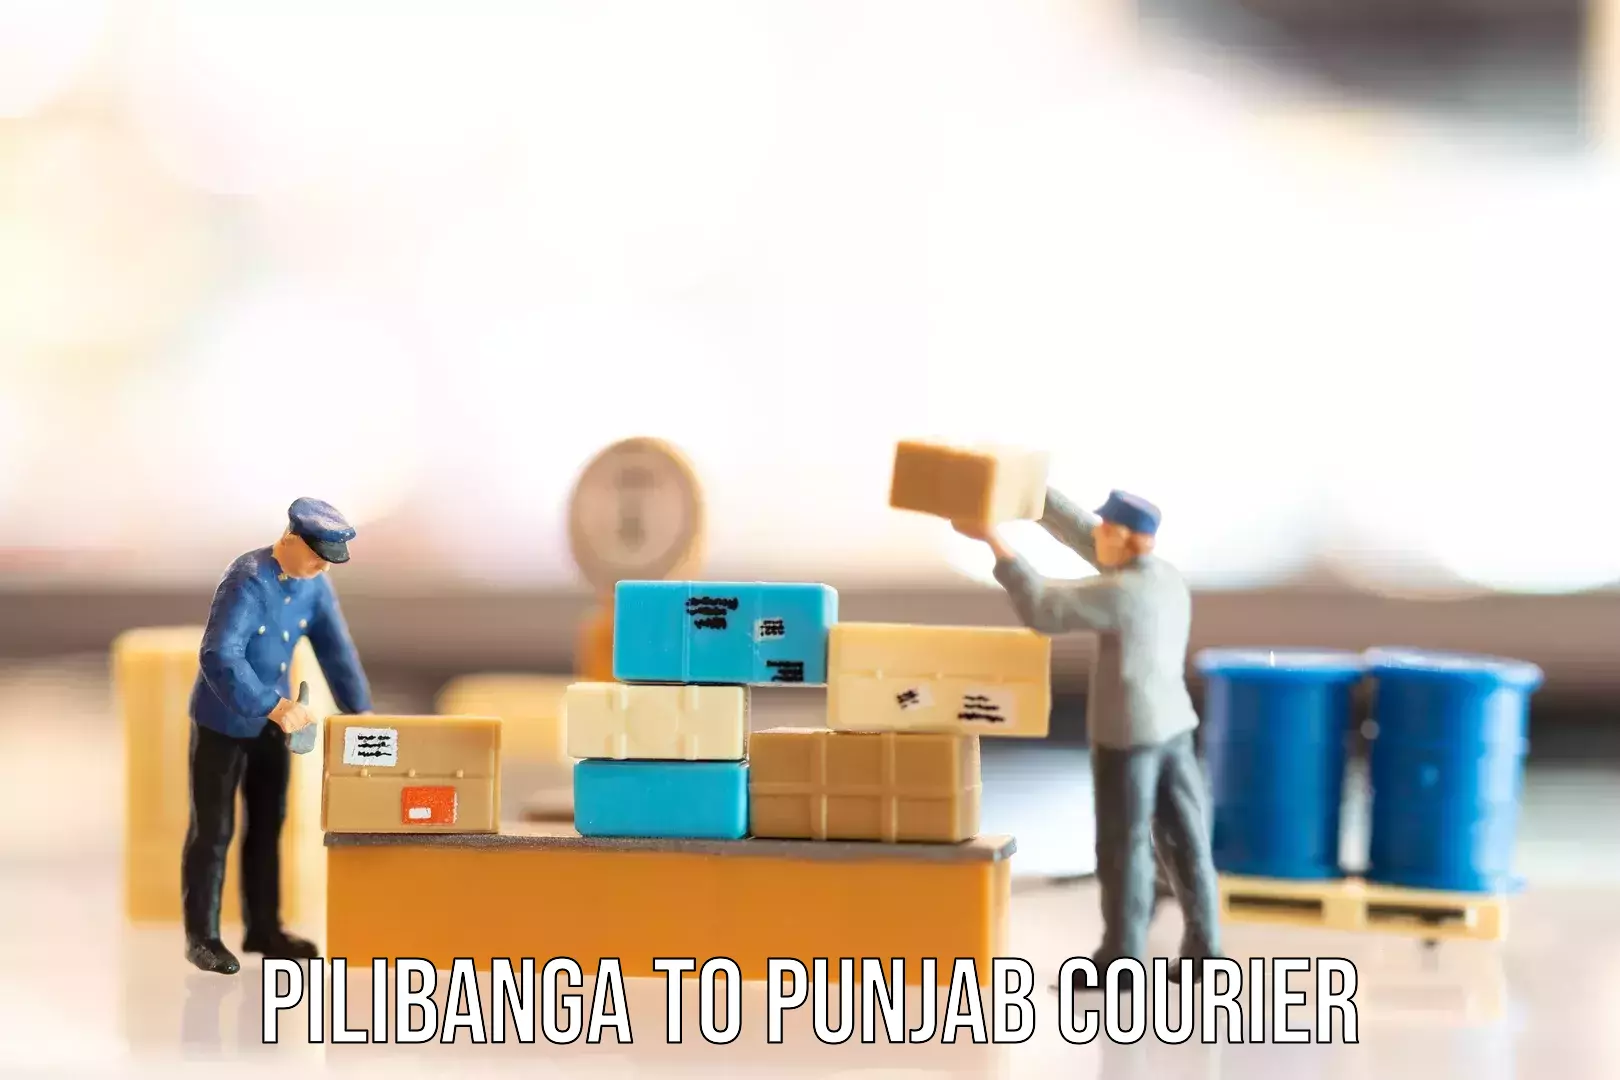 Luggage delivery logistics Pilibanga to Amritsar